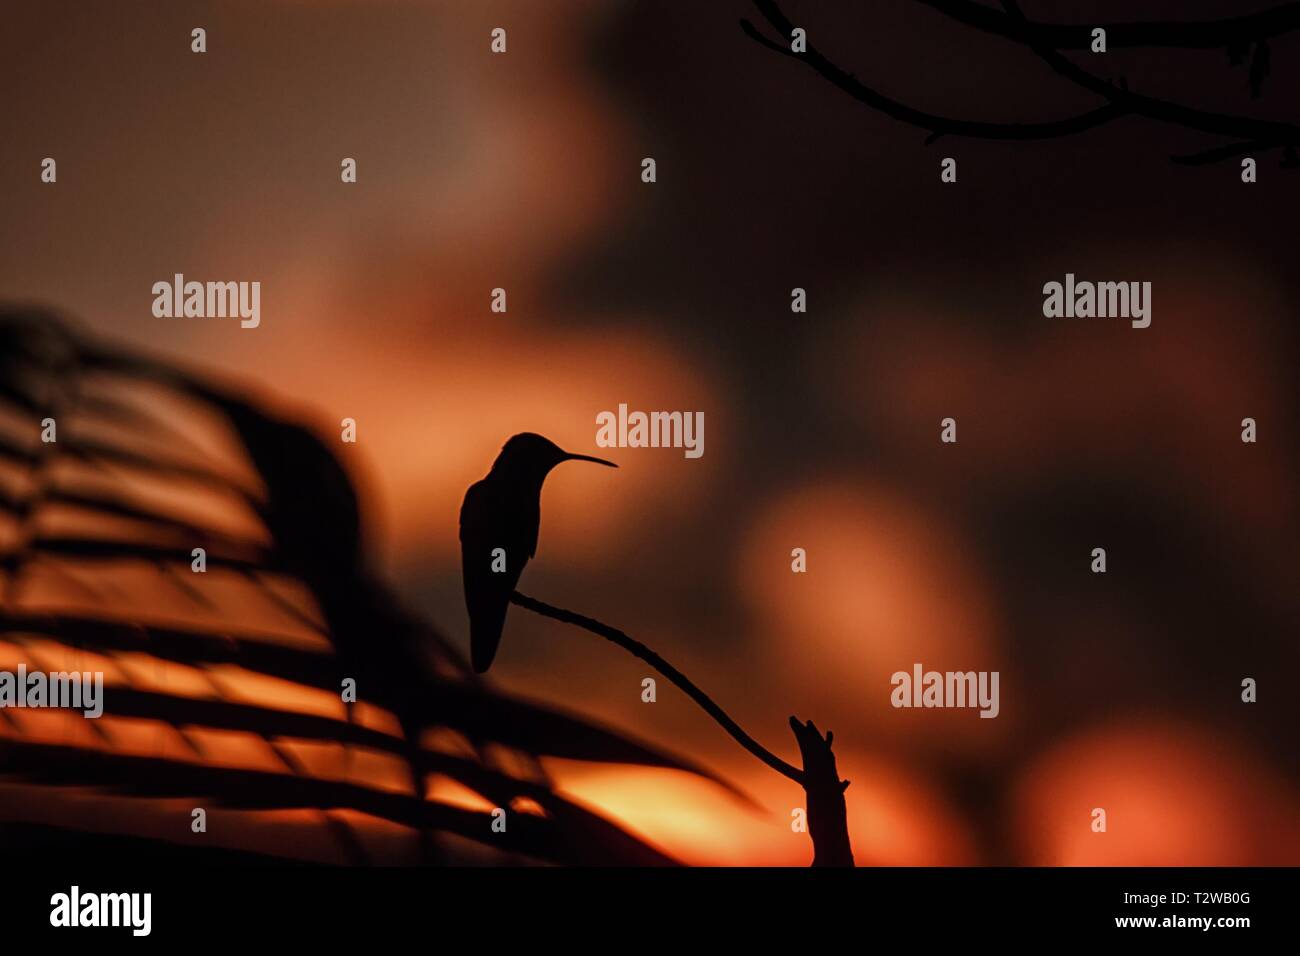 Verde viola-orecchio seduta sul ramo, hummingbird da foresta pluviale, Colombia, bird perchin al tramonto nel giardino,Cancella sfondo,bird silhouette isolato Foto Stock